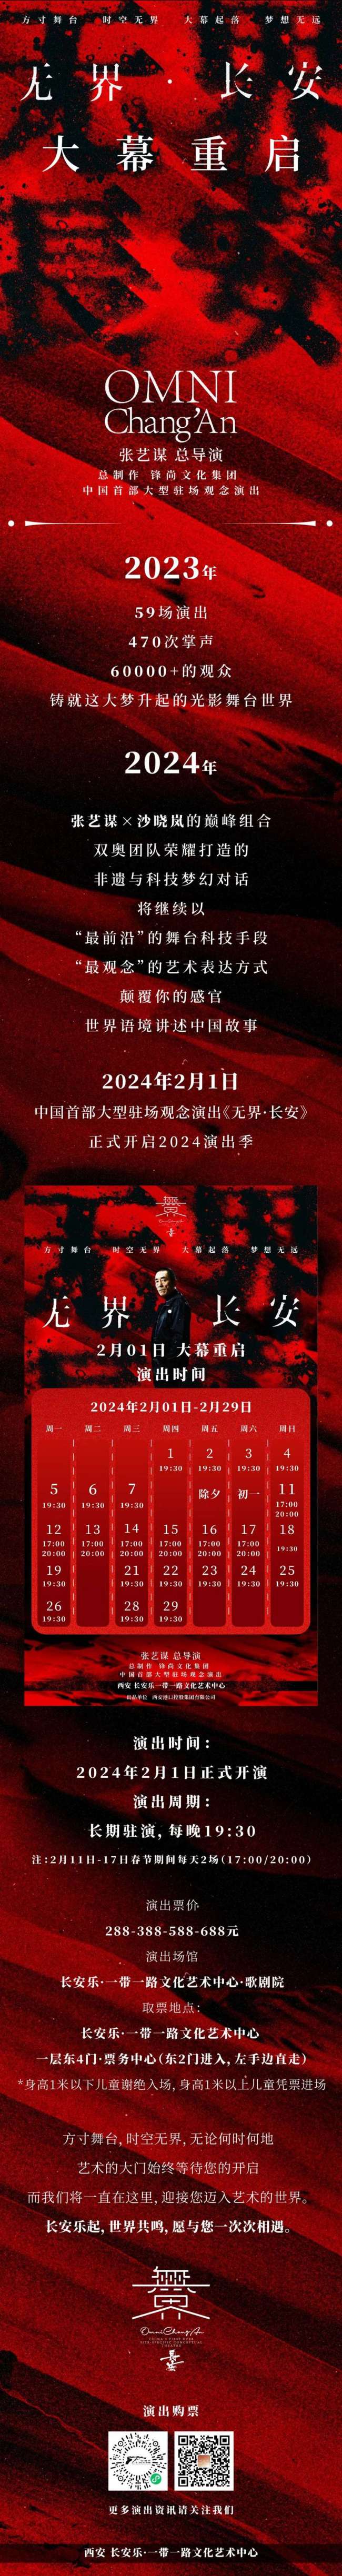 新年加场！中国首部大型驻场观念演出《无界·长安》2月1日重启